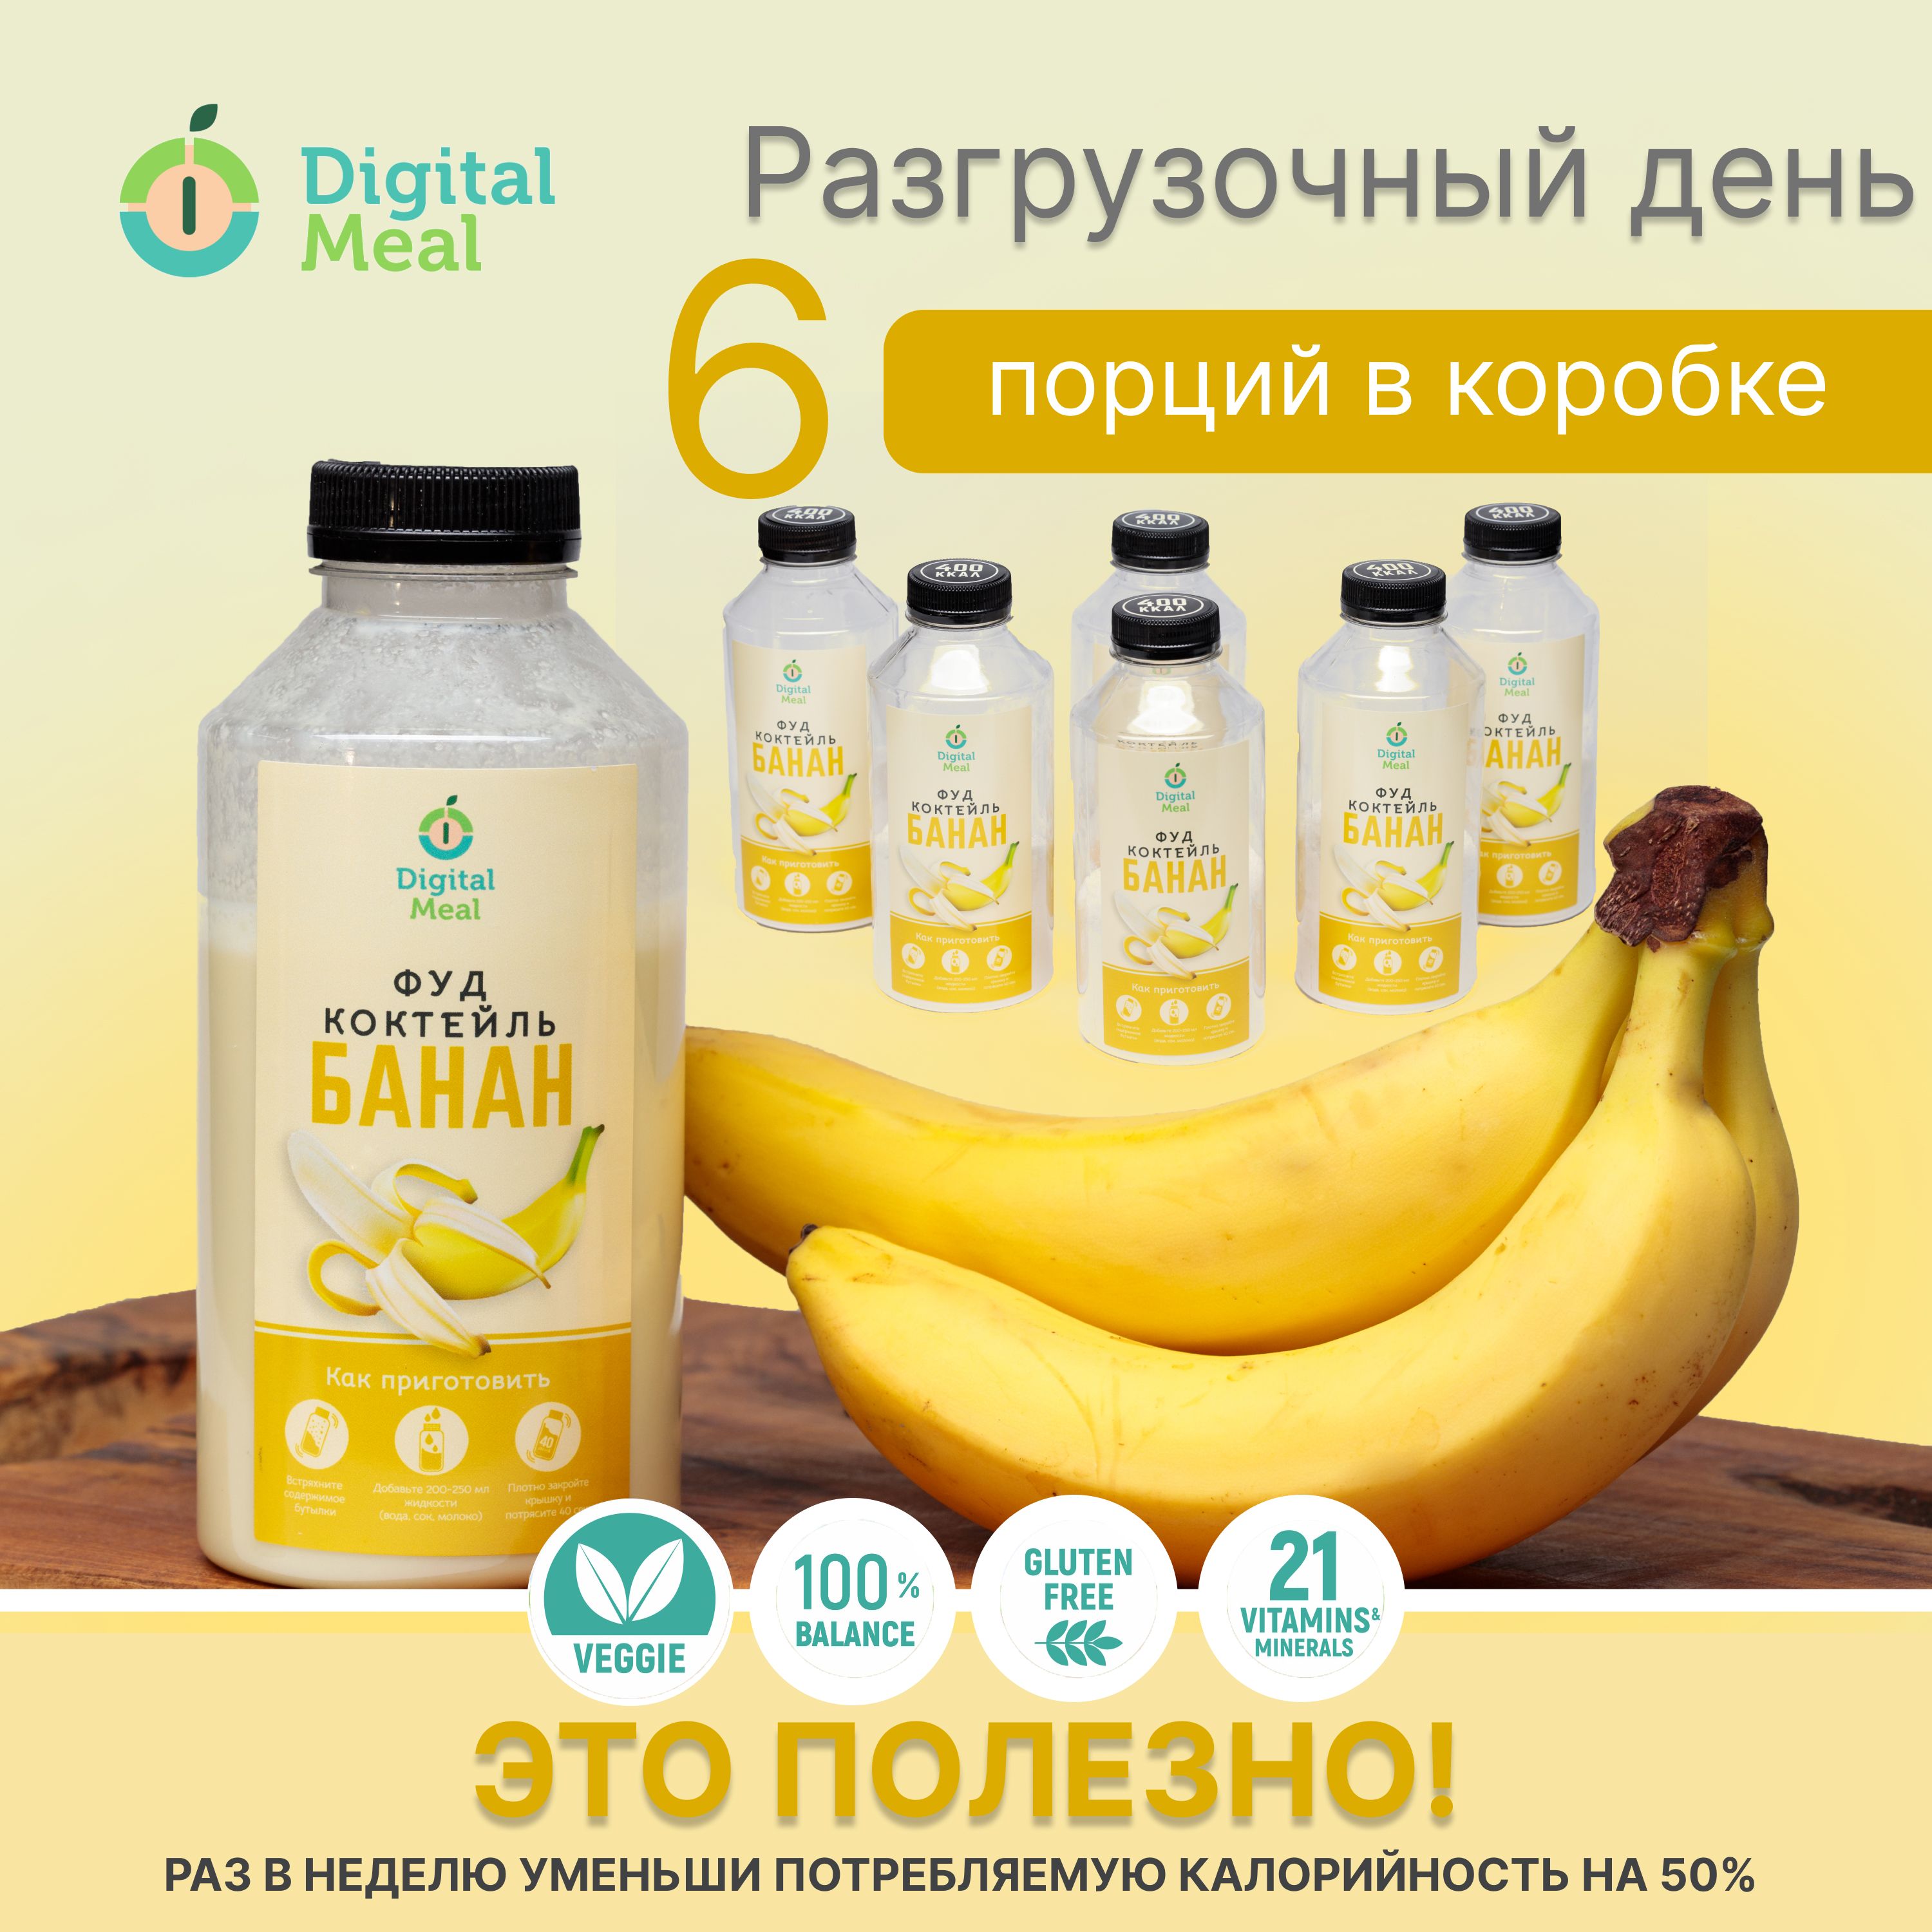 Коктейль Digital Meal заменитель еды для похудения банан 300 кКал, 6 шт по 0,5 л